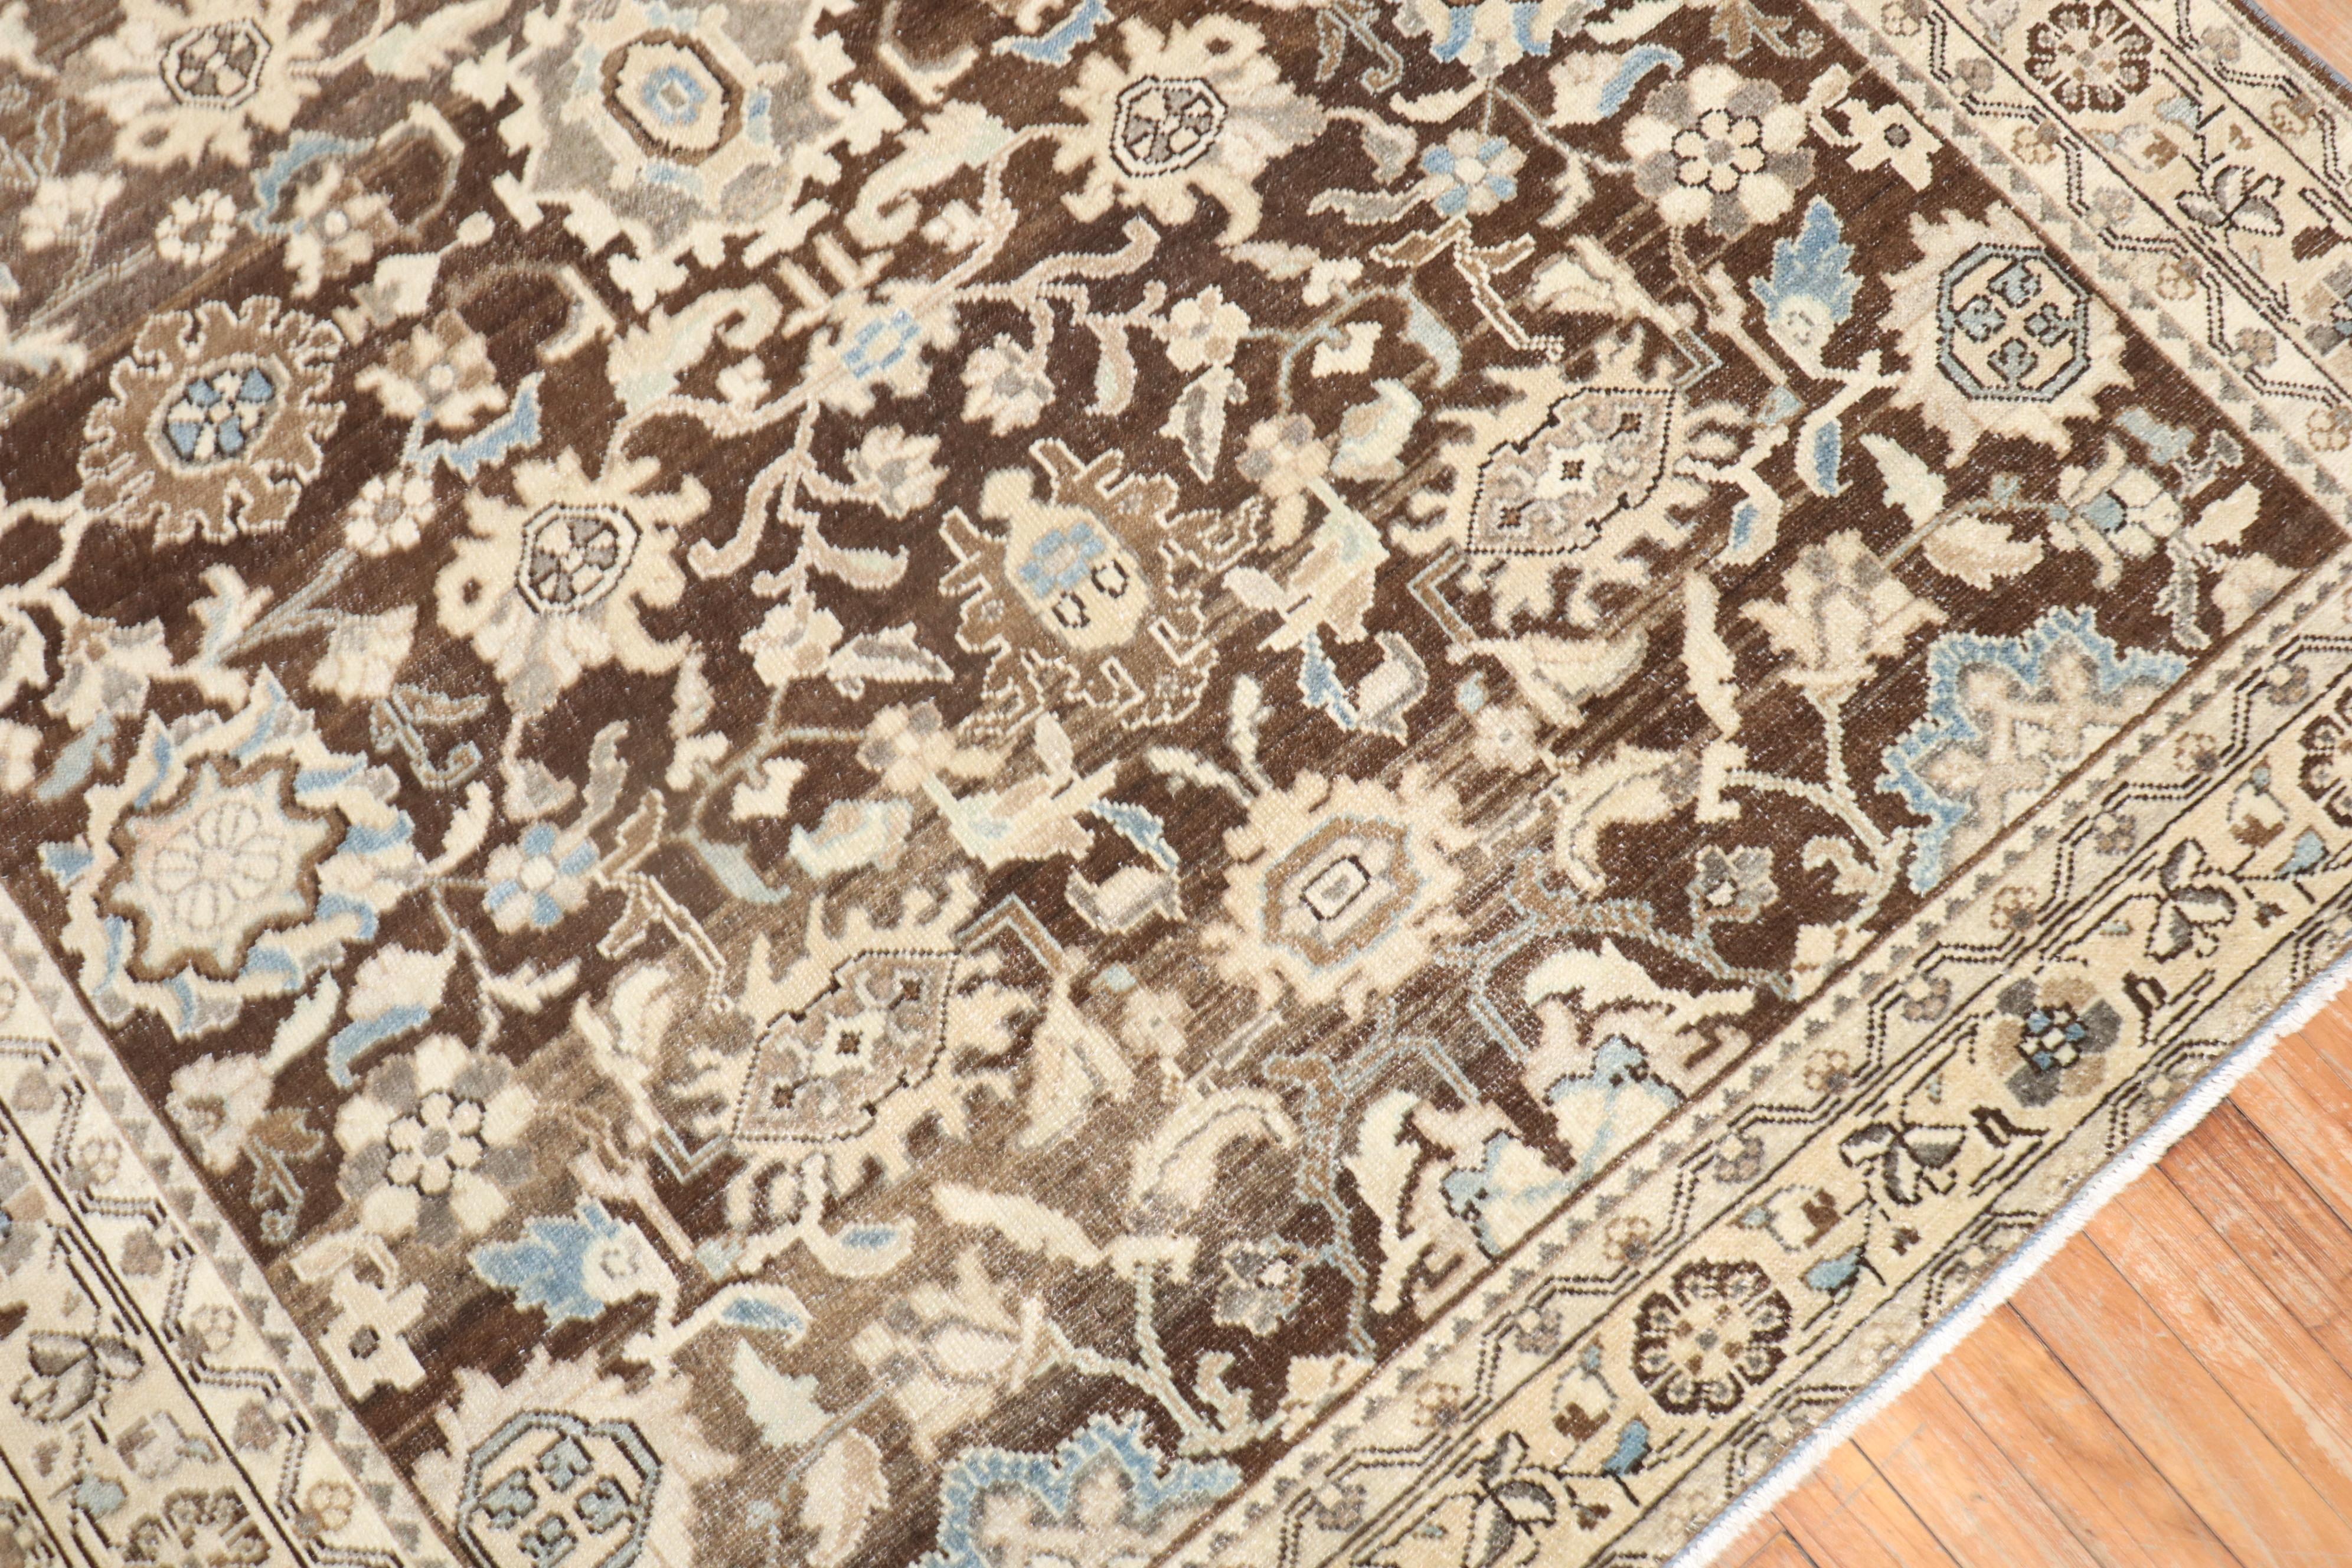 Ancien tapis persan Malayer du 2e quart du 20e siècle à fond brun chocolat

Tapis no. j2550
Taille 5'6